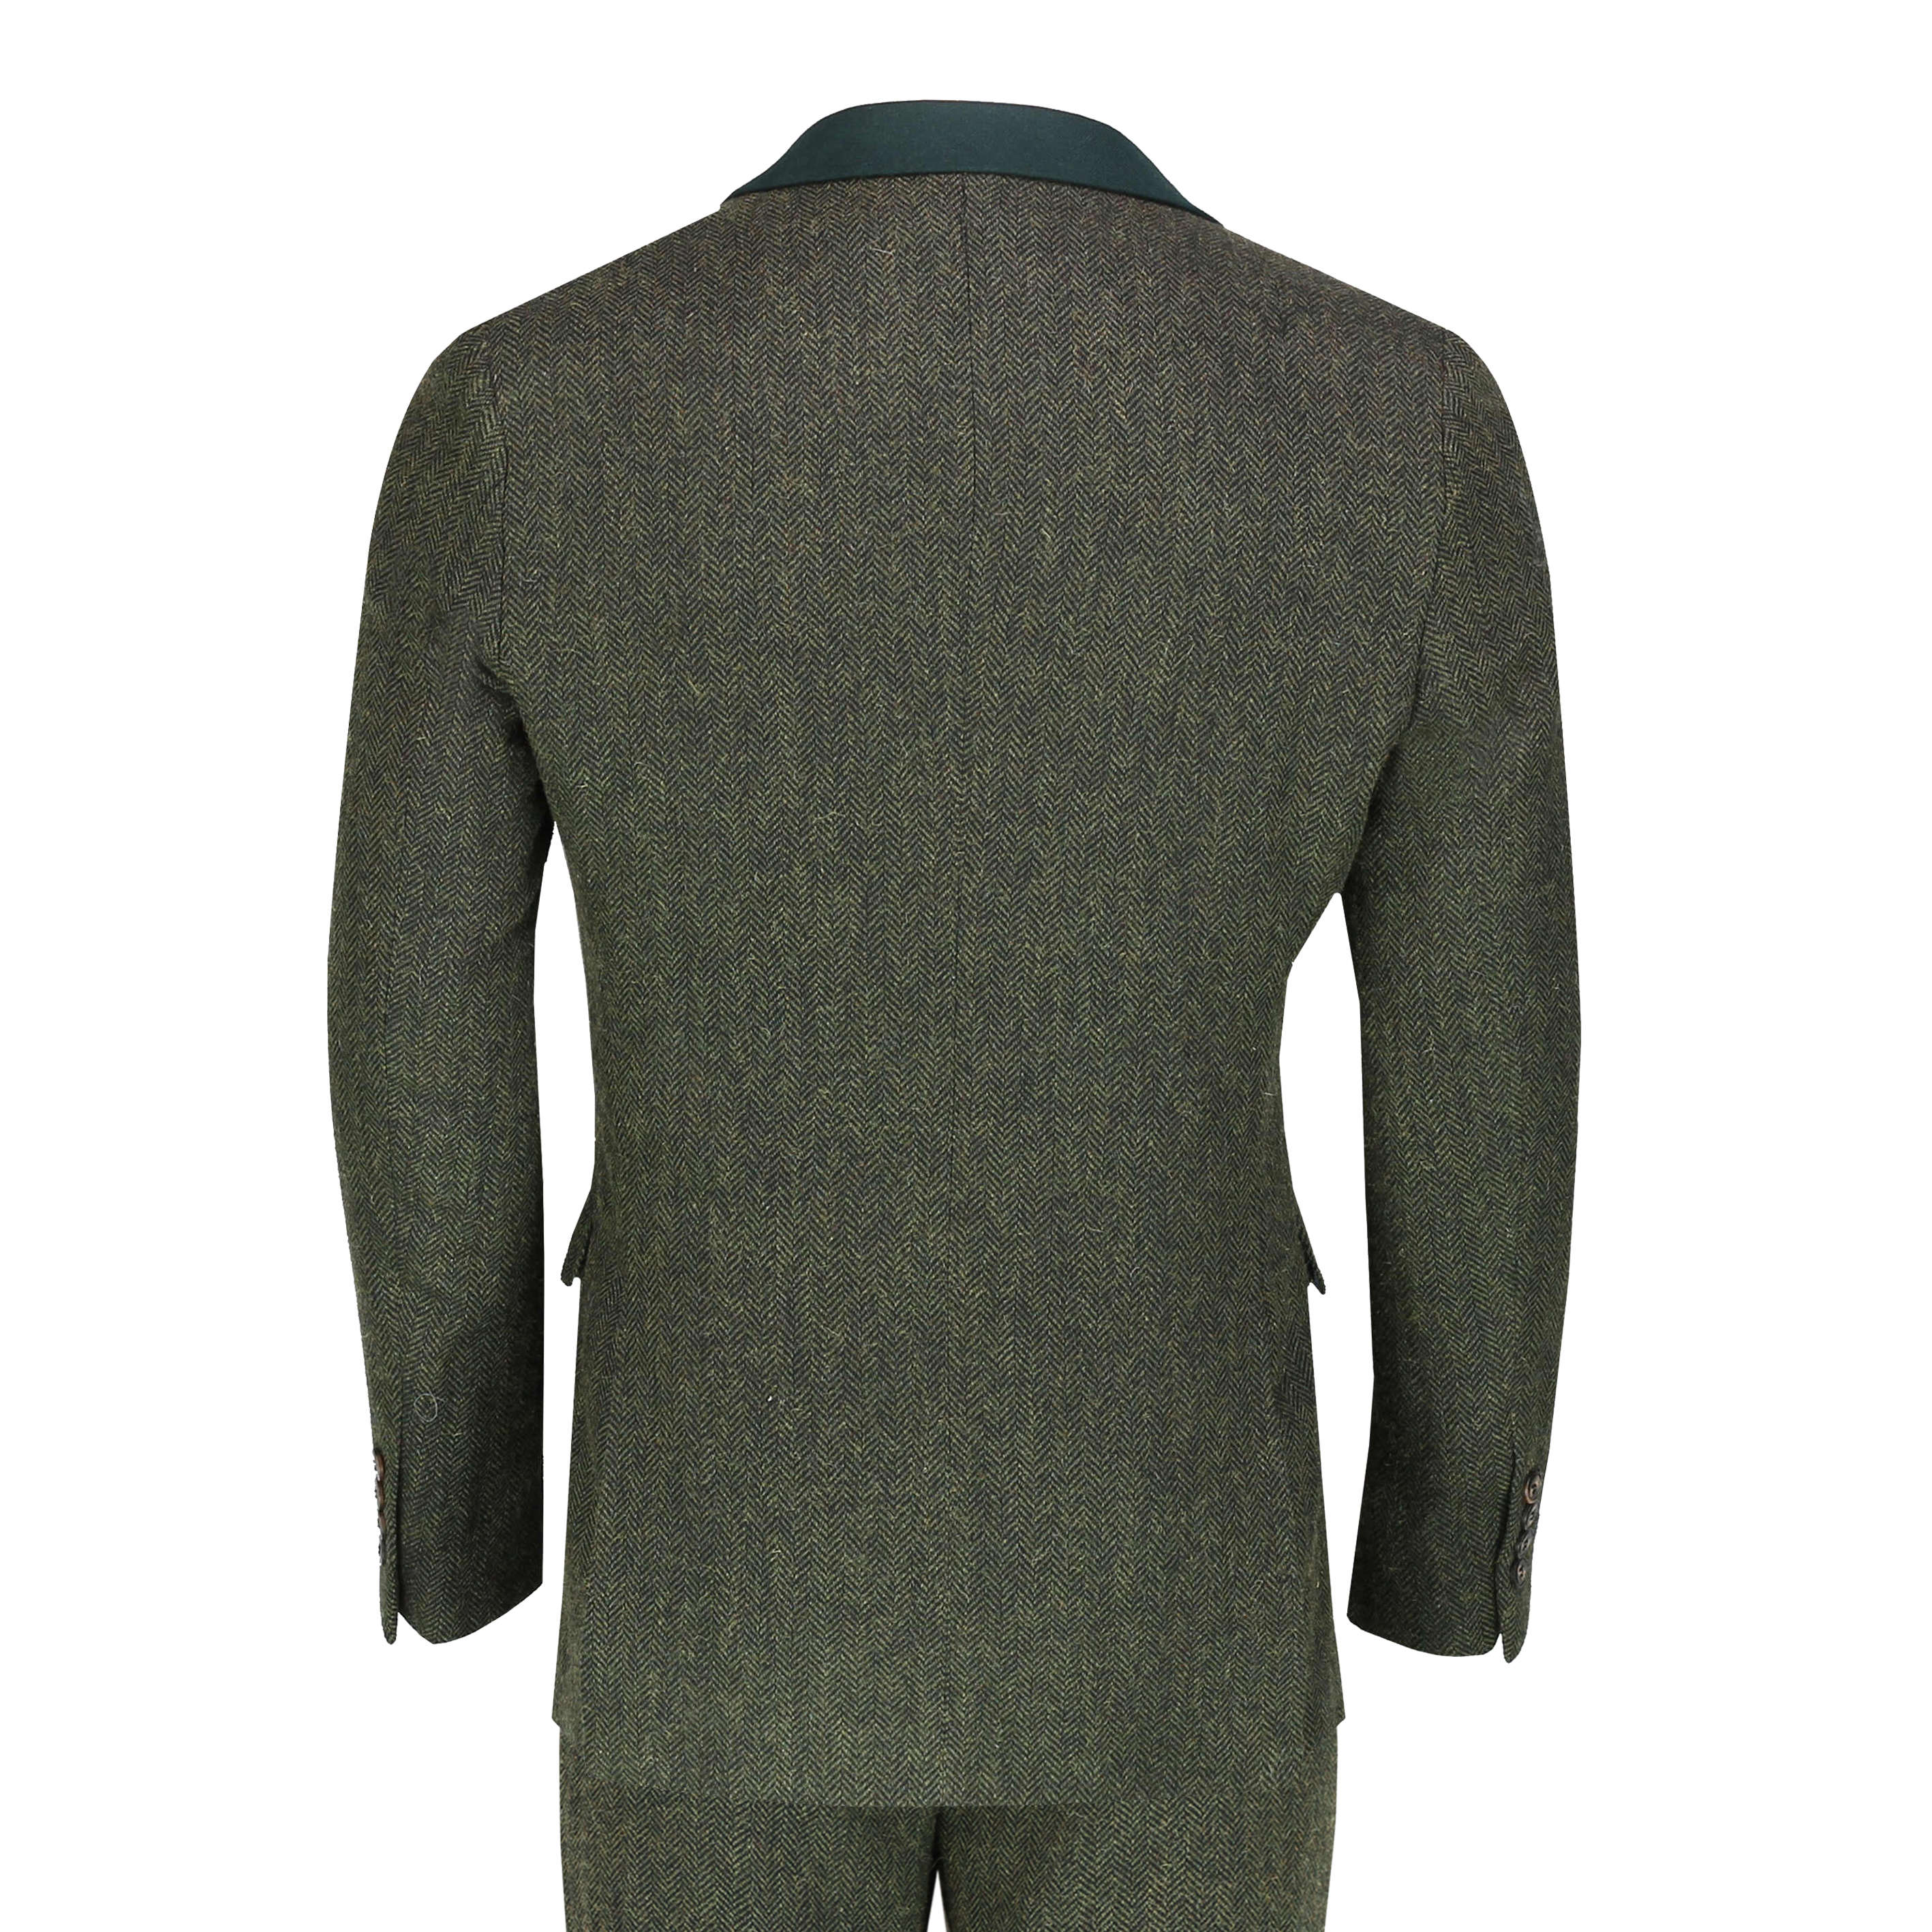 Mens Herringbone Tweed 3 Piece Suit Retro Smart Tailored Fit Olive ...